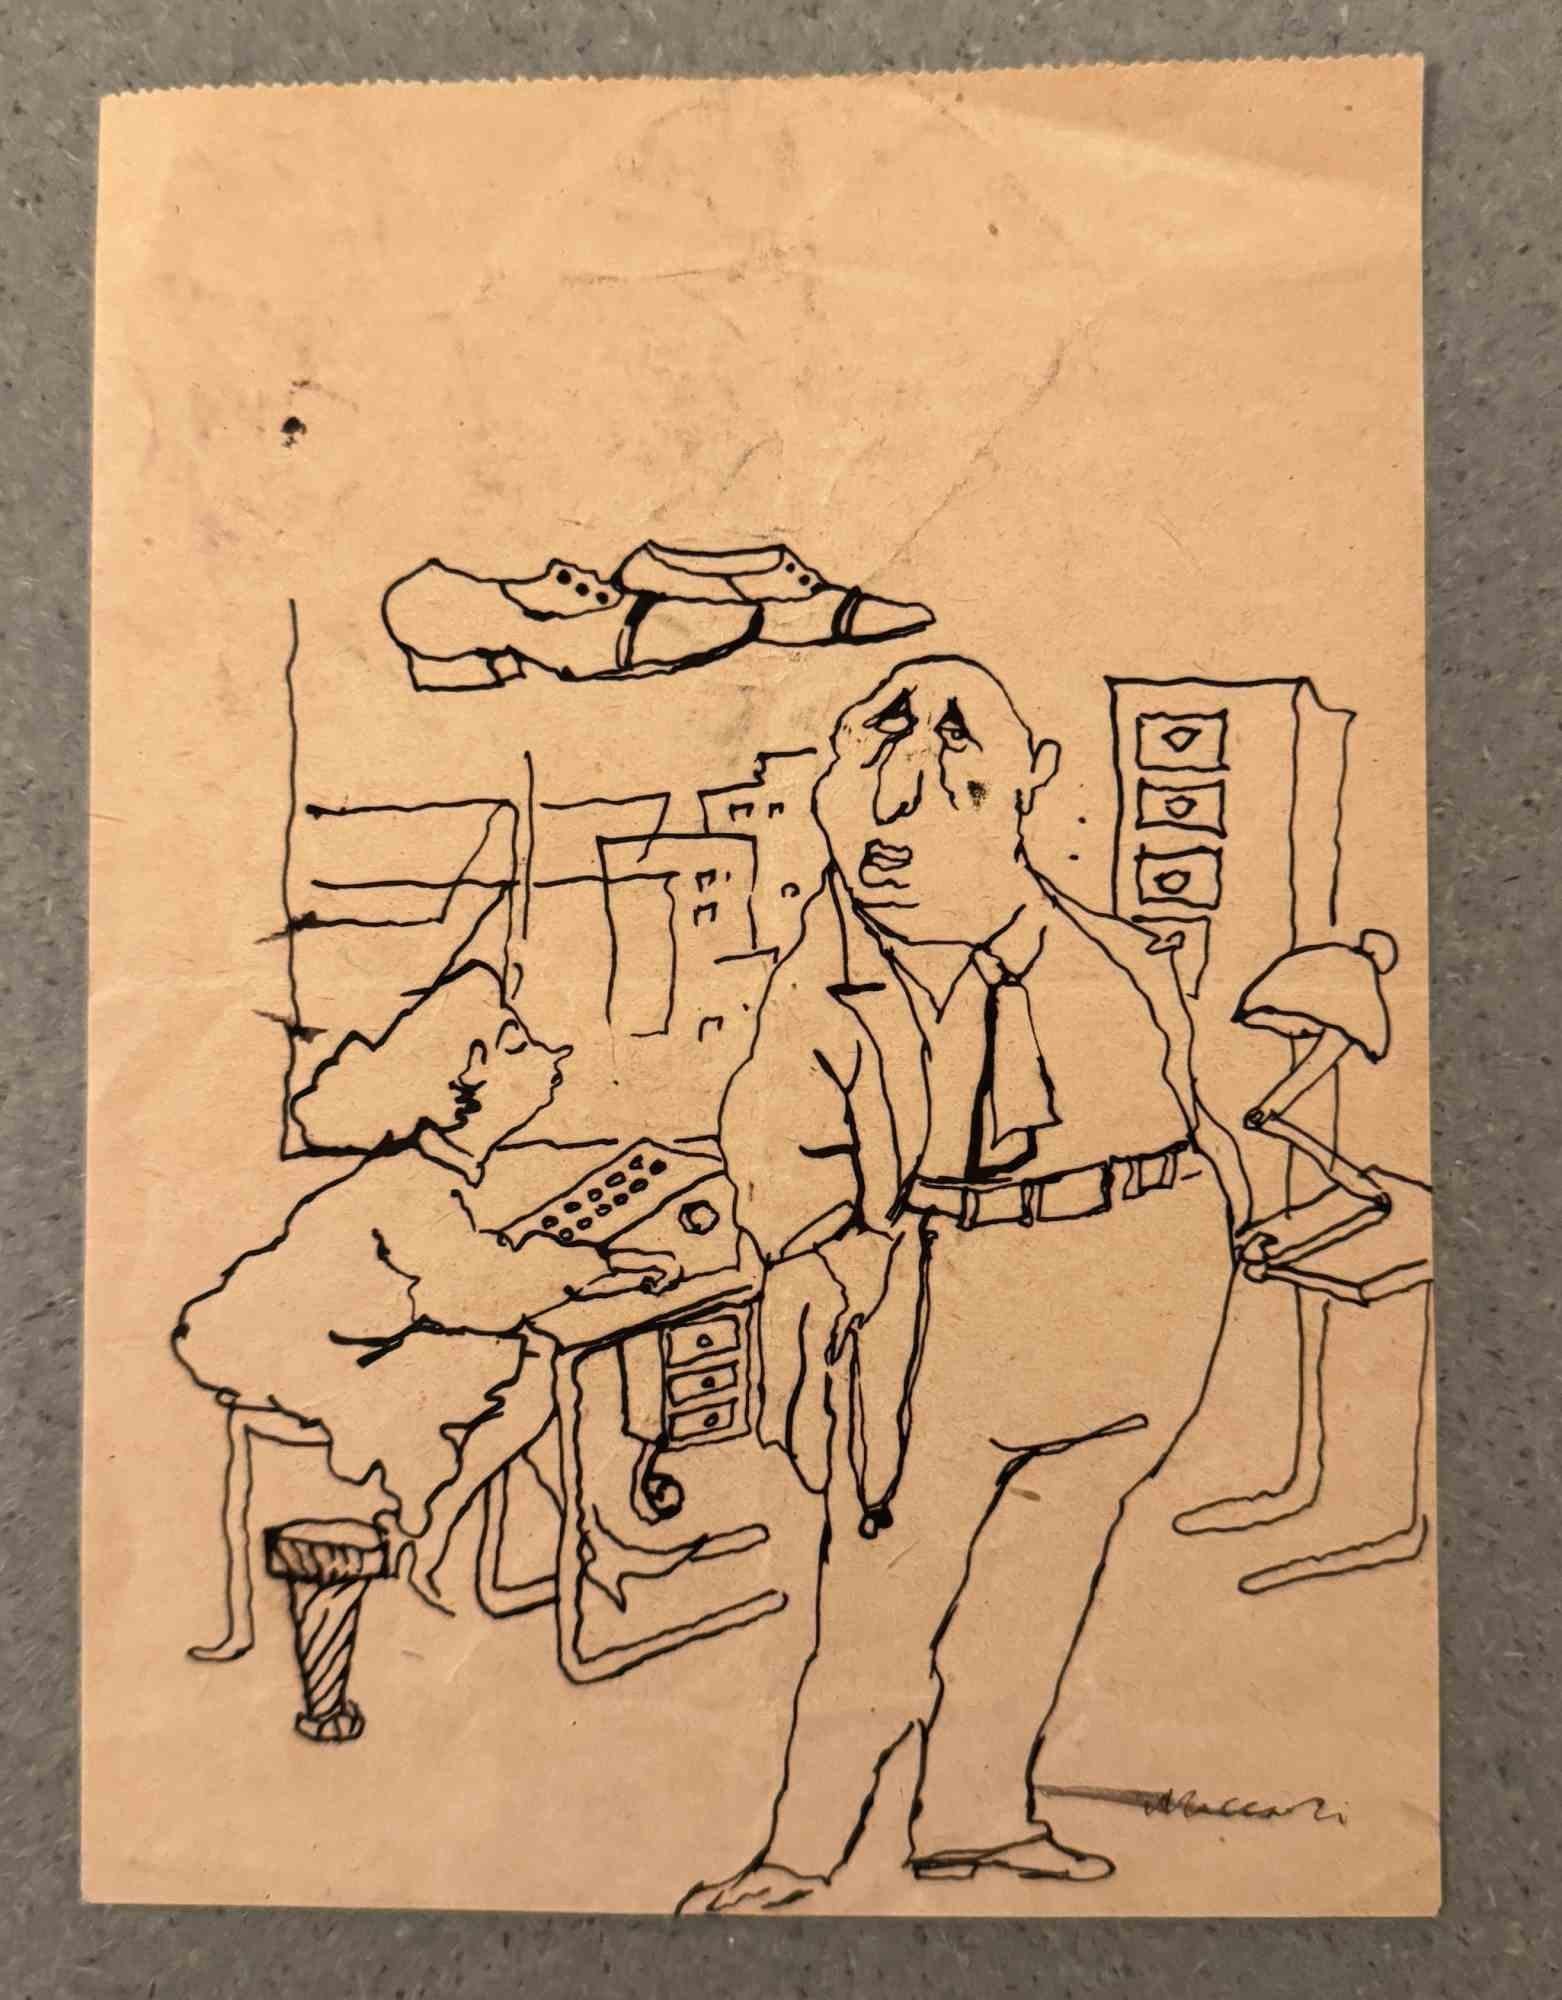 Laboratory est un dessin à l'encre de Chine réalisé par Mino Maccari (1924-1989) au milieu du 20e siècle.

Signé à la main.

Bon état avec de légères rousseurs.

Mino Maccari (Sienne, 1924-Rome, 16 juin 1989) est un écrivain, peintre, graveur et